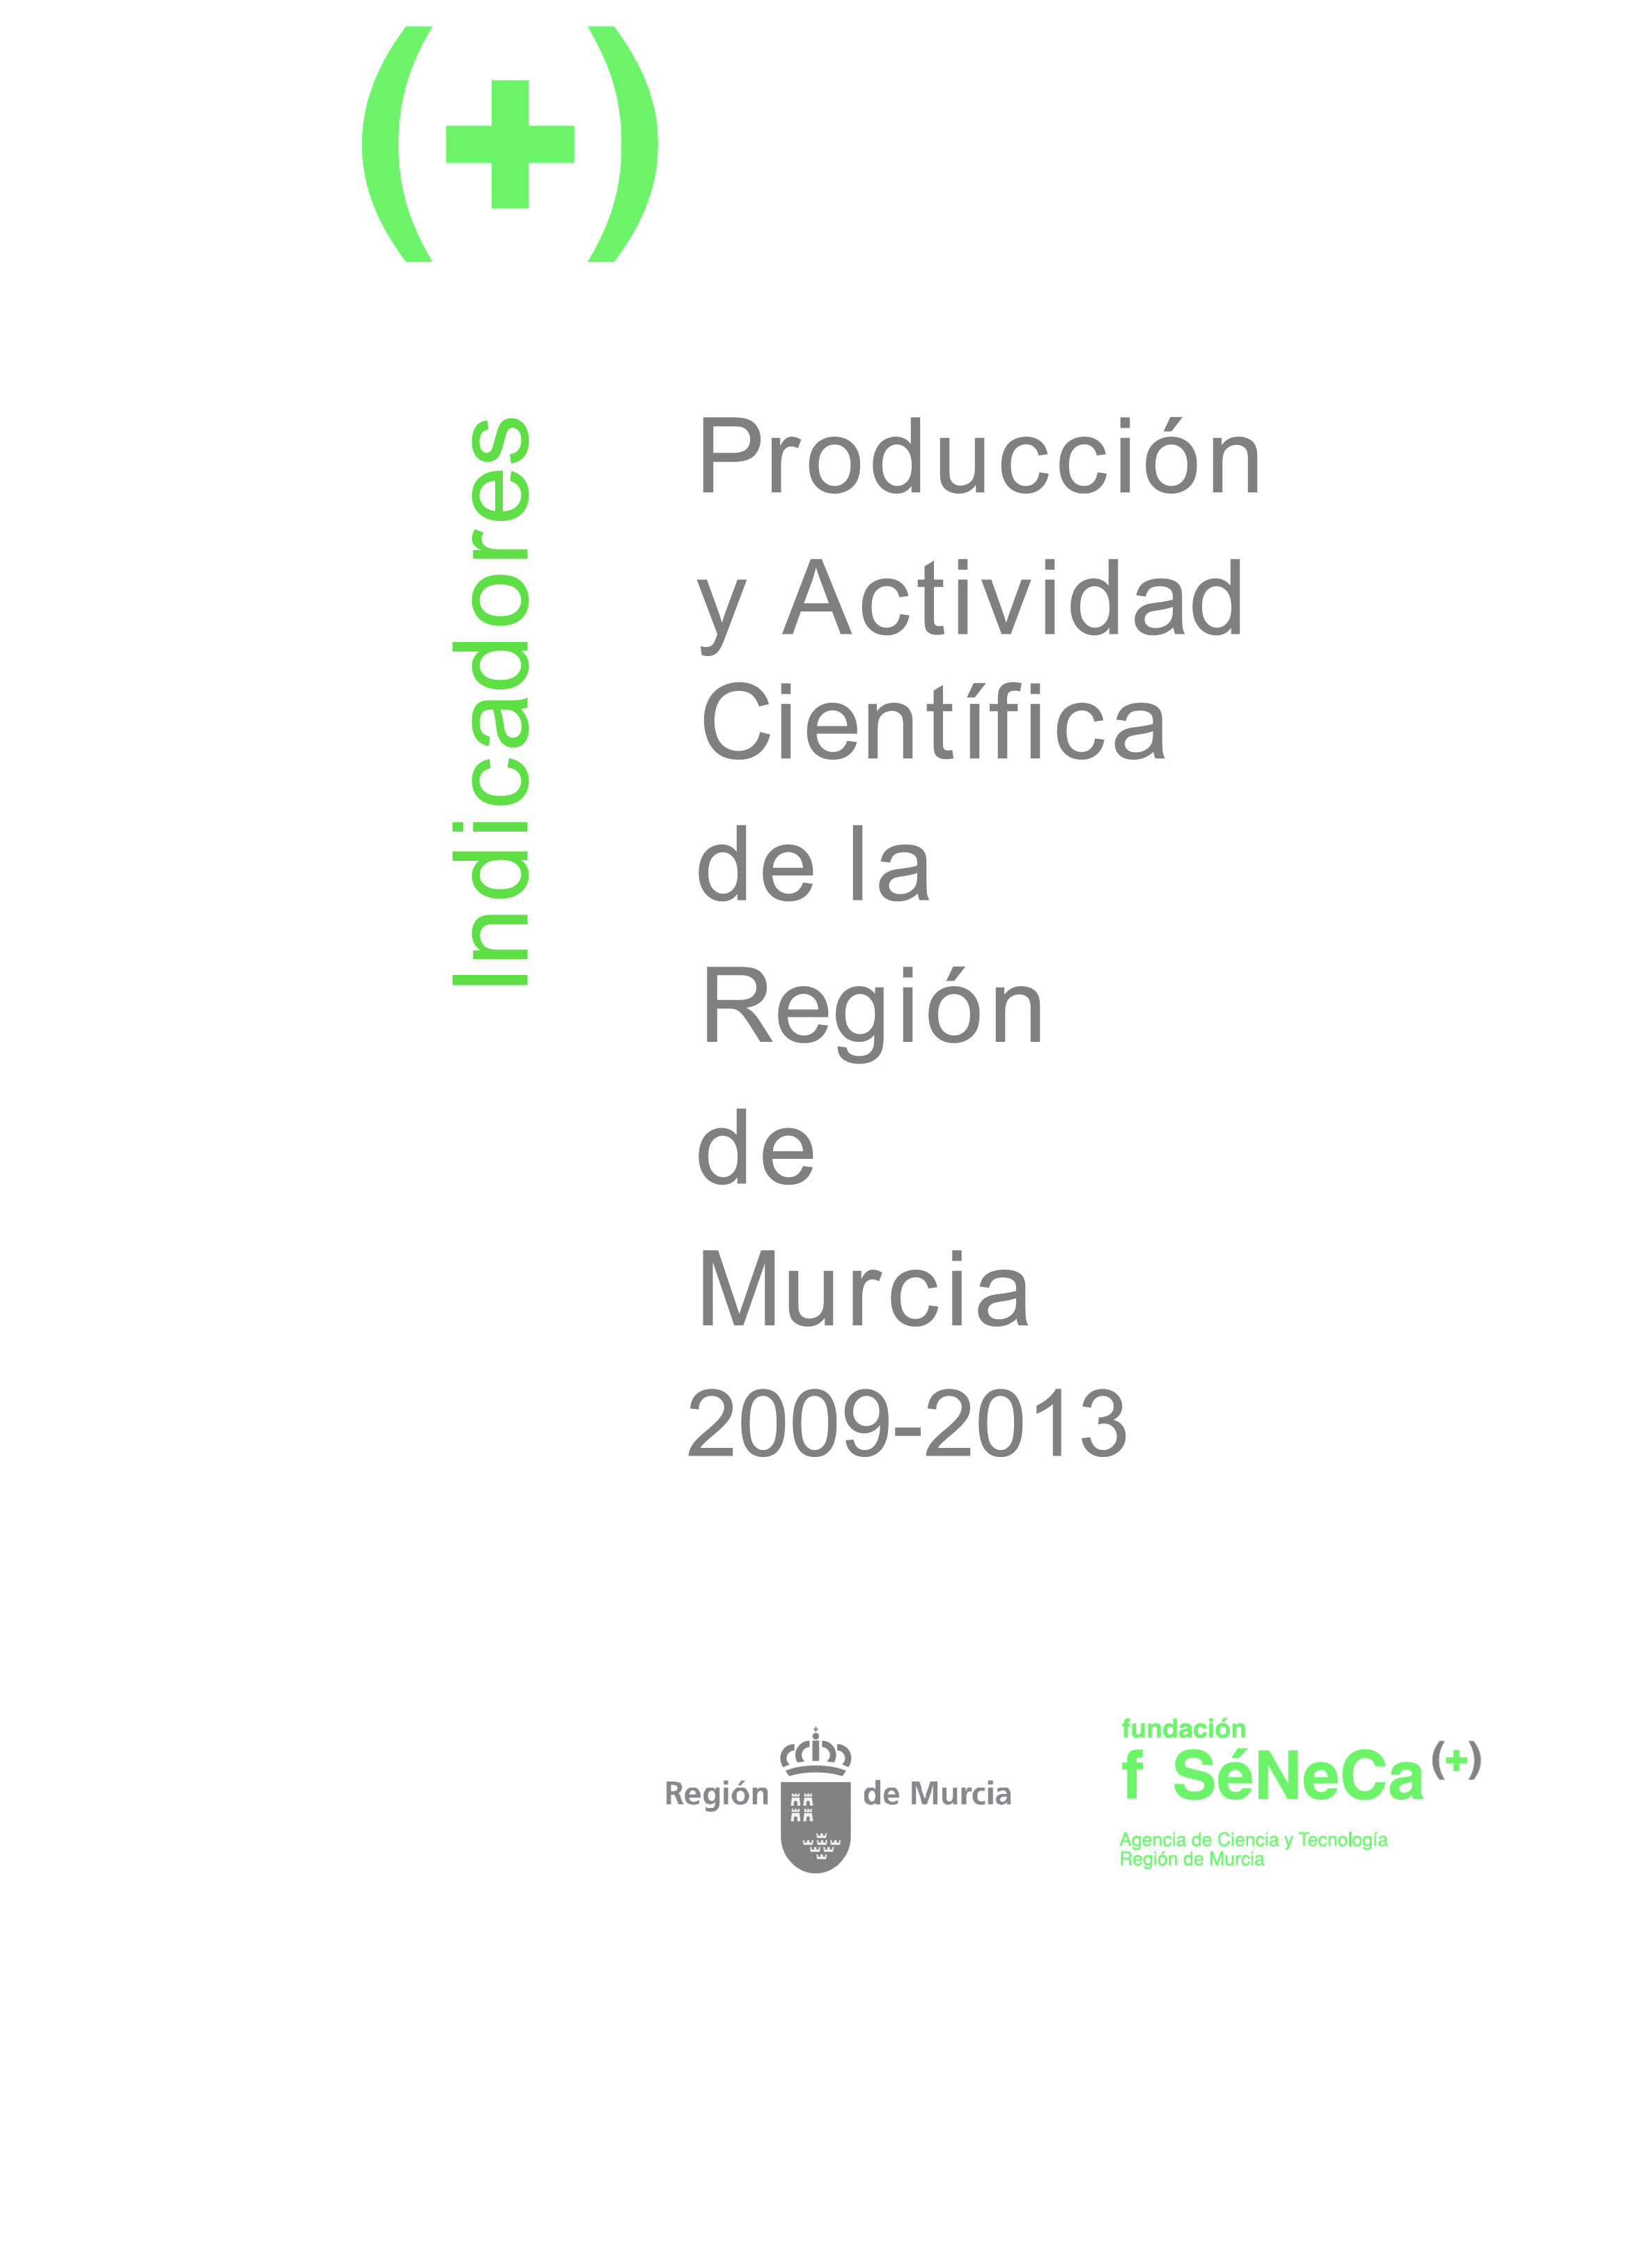 Indicadores de Producción y Actividad Científica de la Región de Murcia 2009-2013